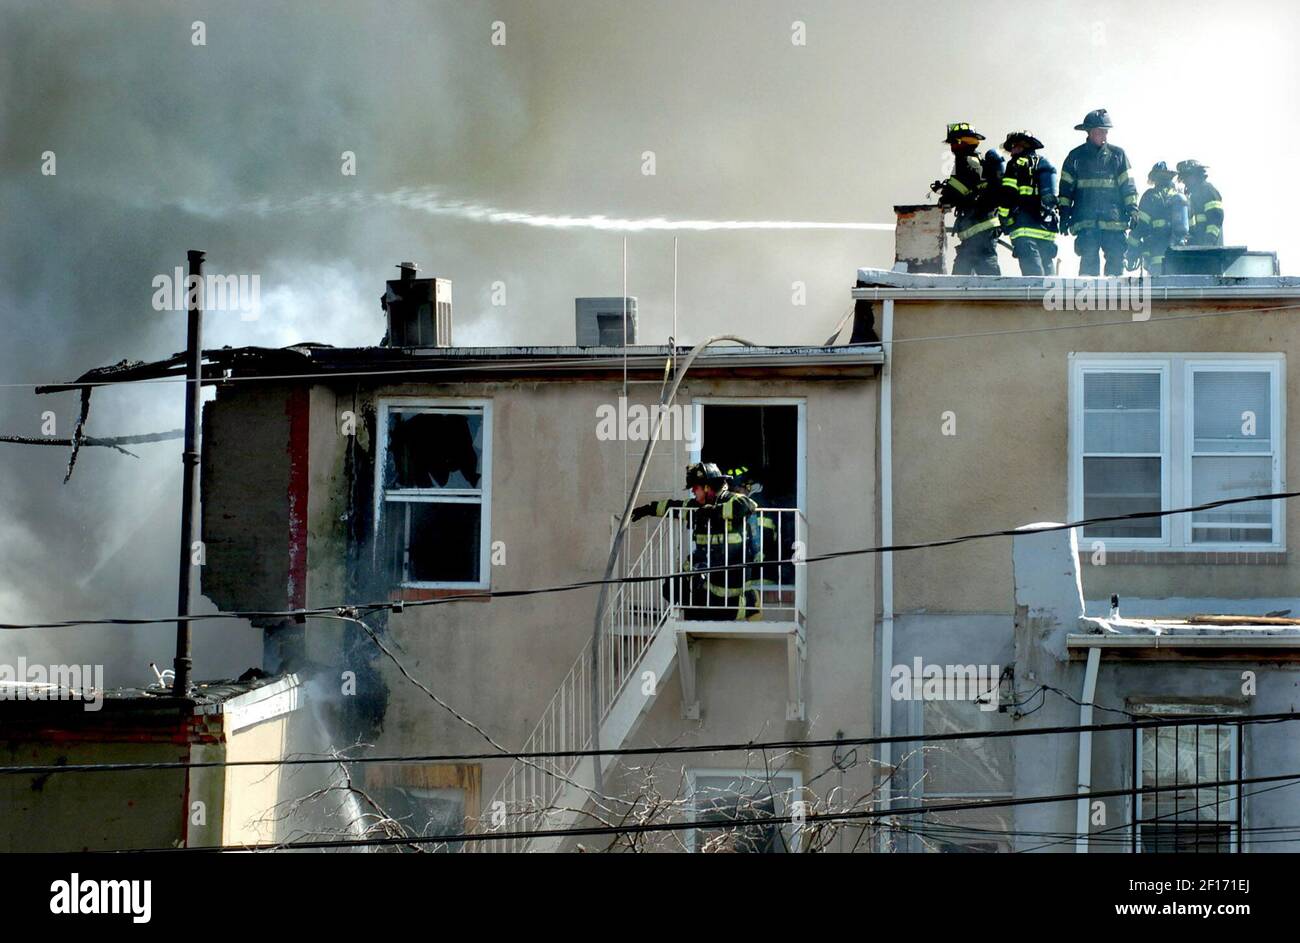 Los bomberos de la ciudad de Baltimore batallaron un incendio que engulló gran parte del bloque de 300 de E. 20th St. Desplazando a los residentes y destruyendo casas en Baltimore, Maryland, lunes, 21 de agosto de 2006. (Foto de Elizabeth Malby/Baltimore Sun/MCT/Sipa USA) Foto de stock